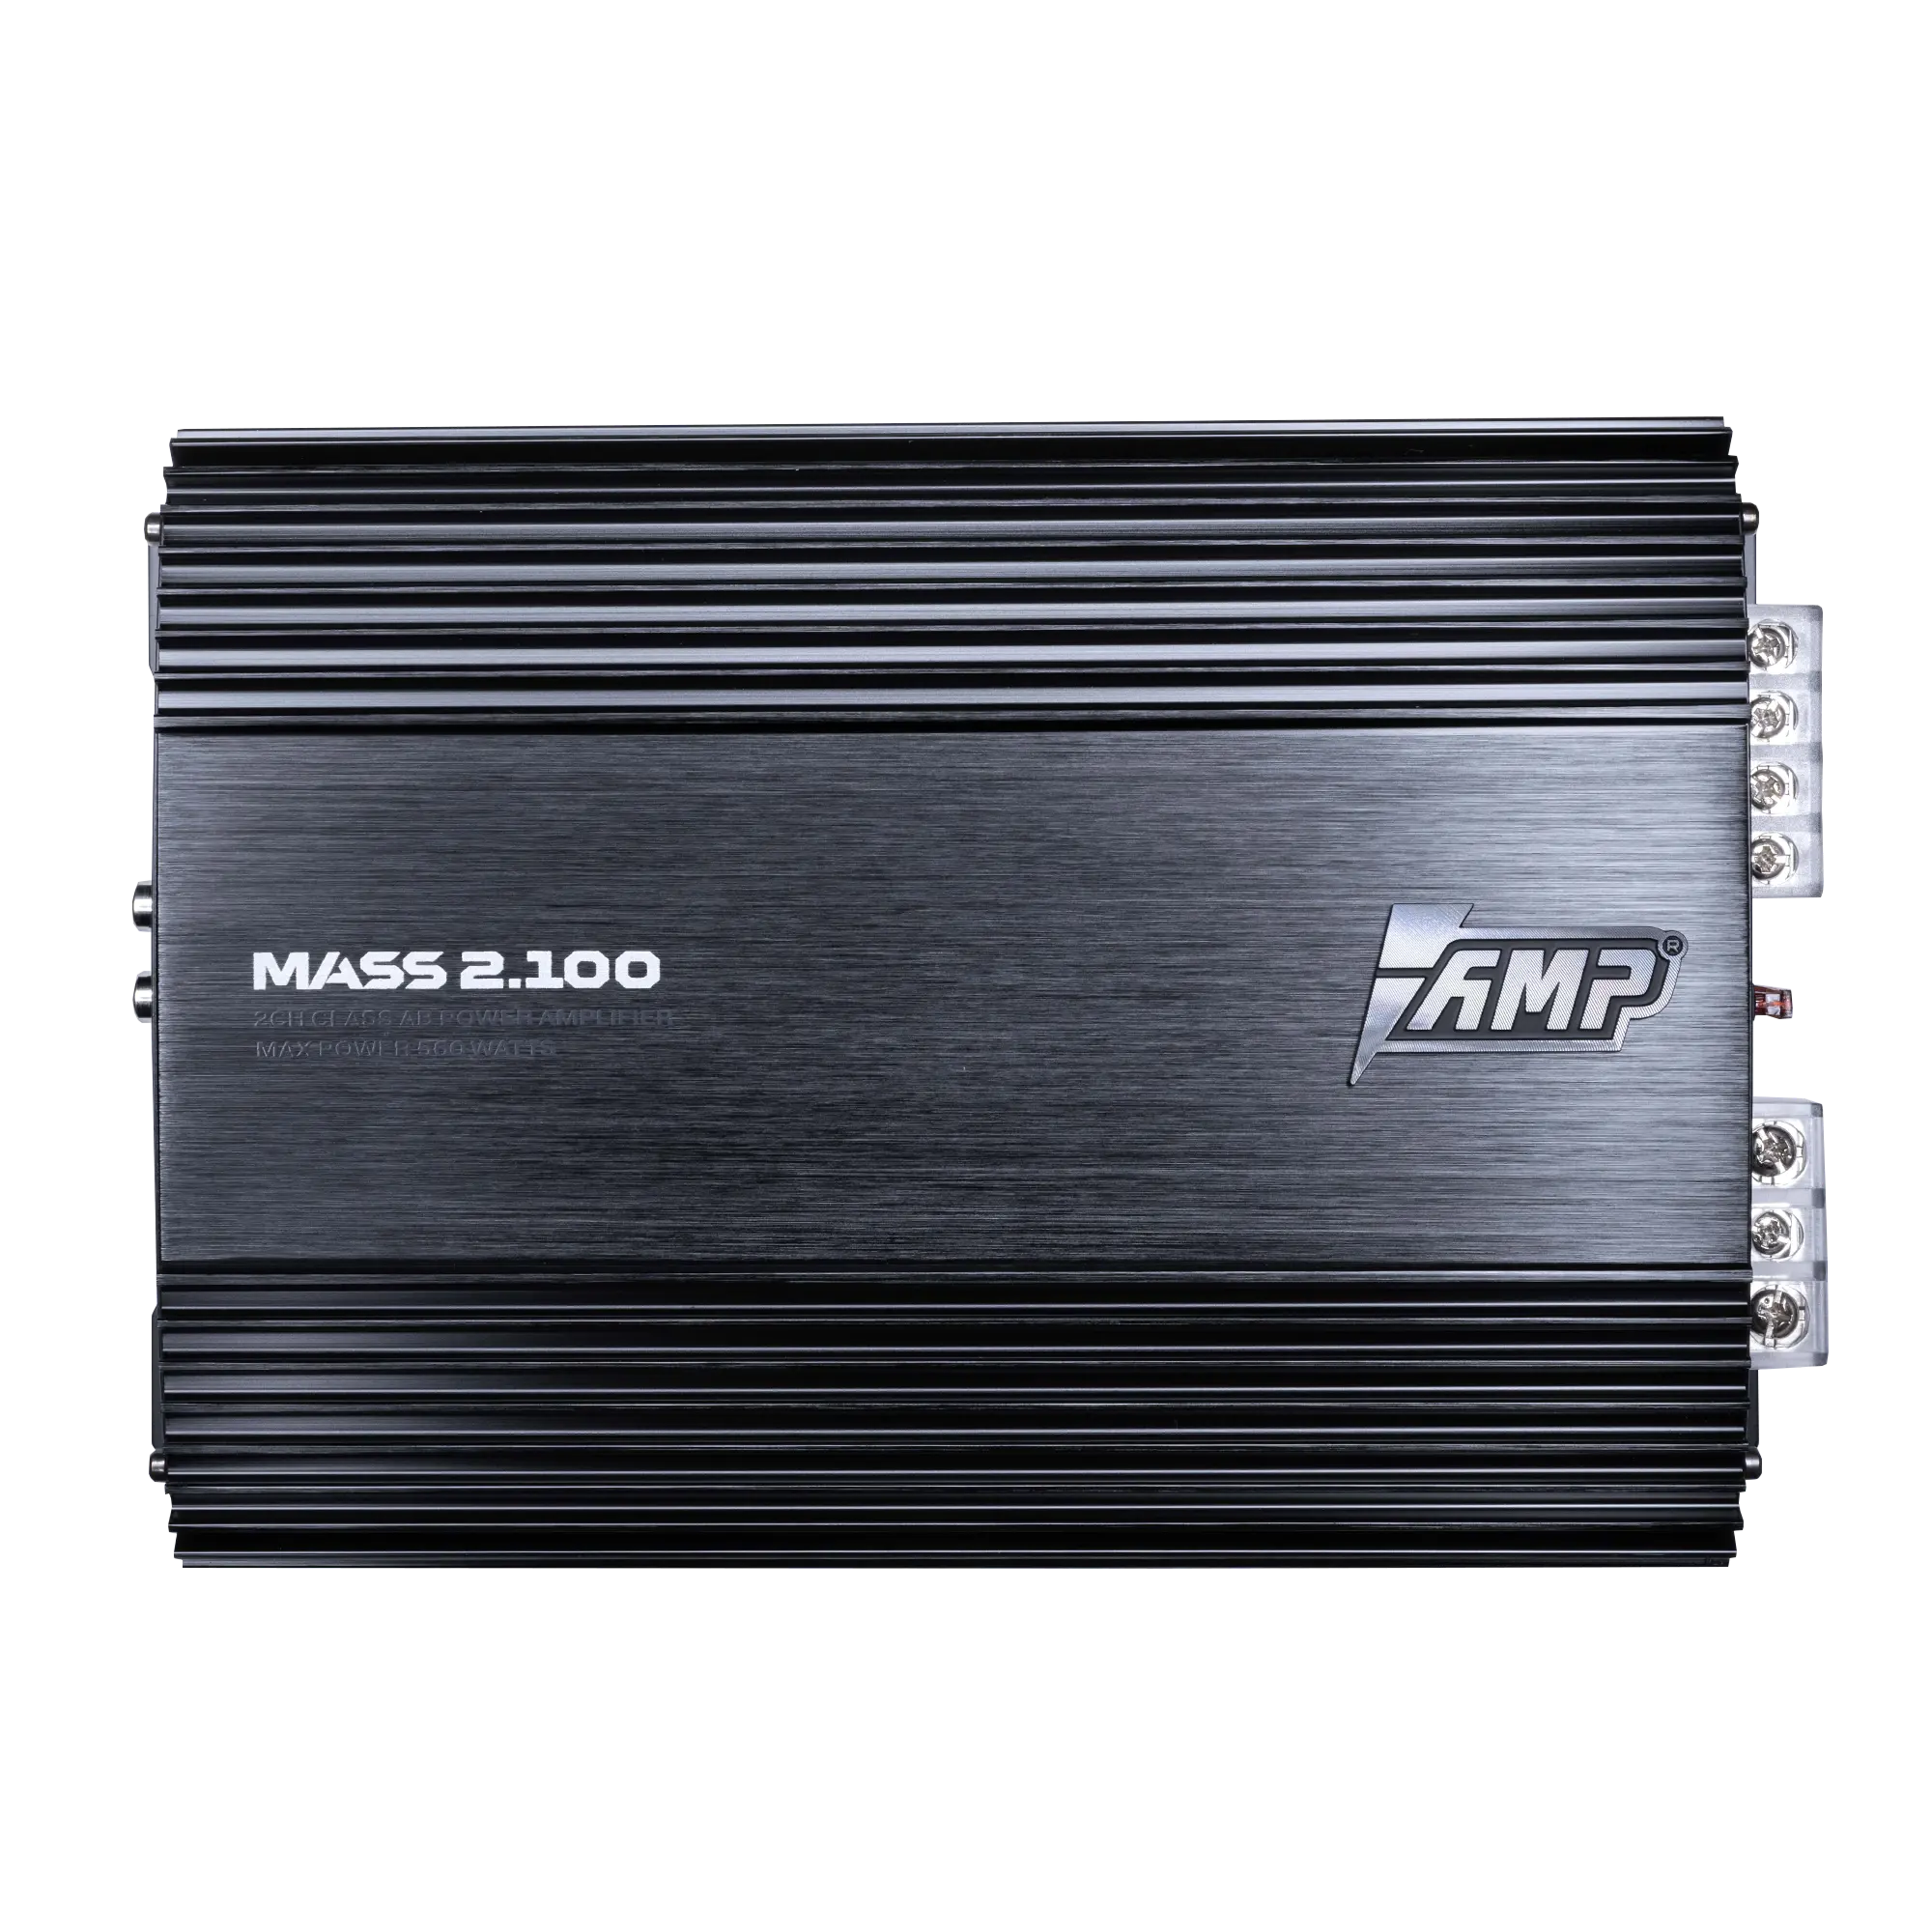 Усилитель AMP MASS 2.100 купить в интернет магазине AMPGROUP.  Усилитель AMP MASS 2.100   цены, большой каталог, новинки.
